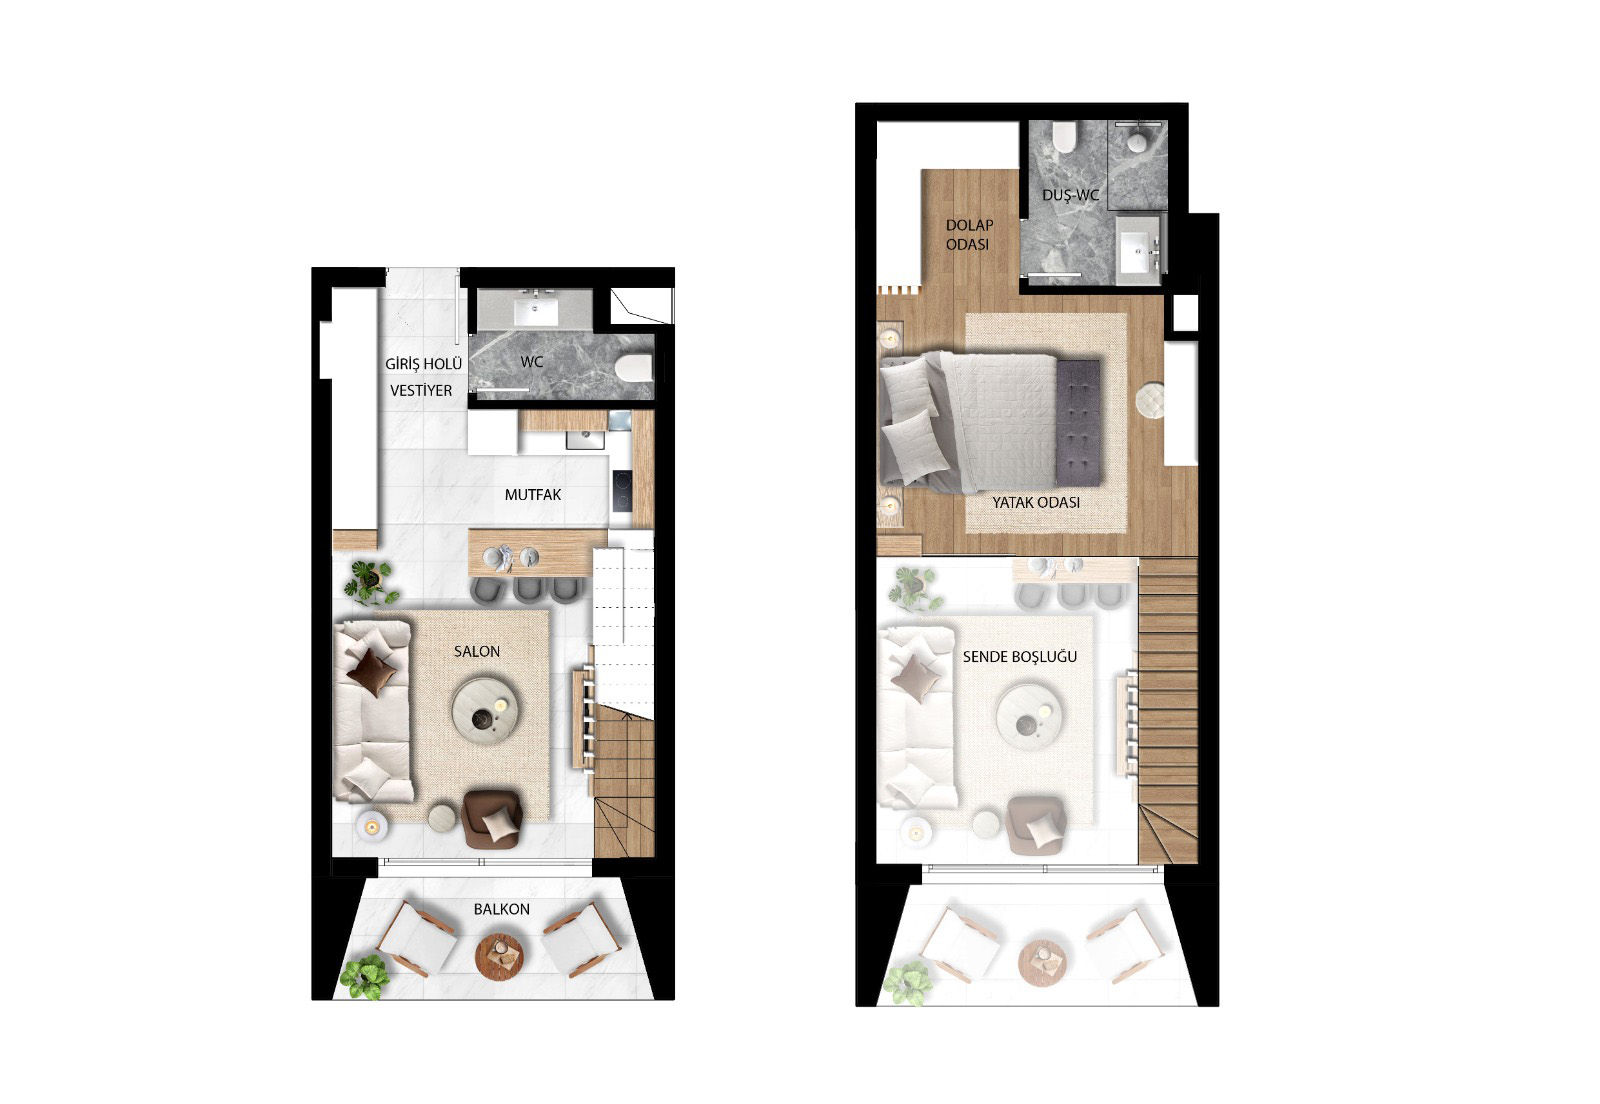 Floor Plan - One bedroom duplex penthouse